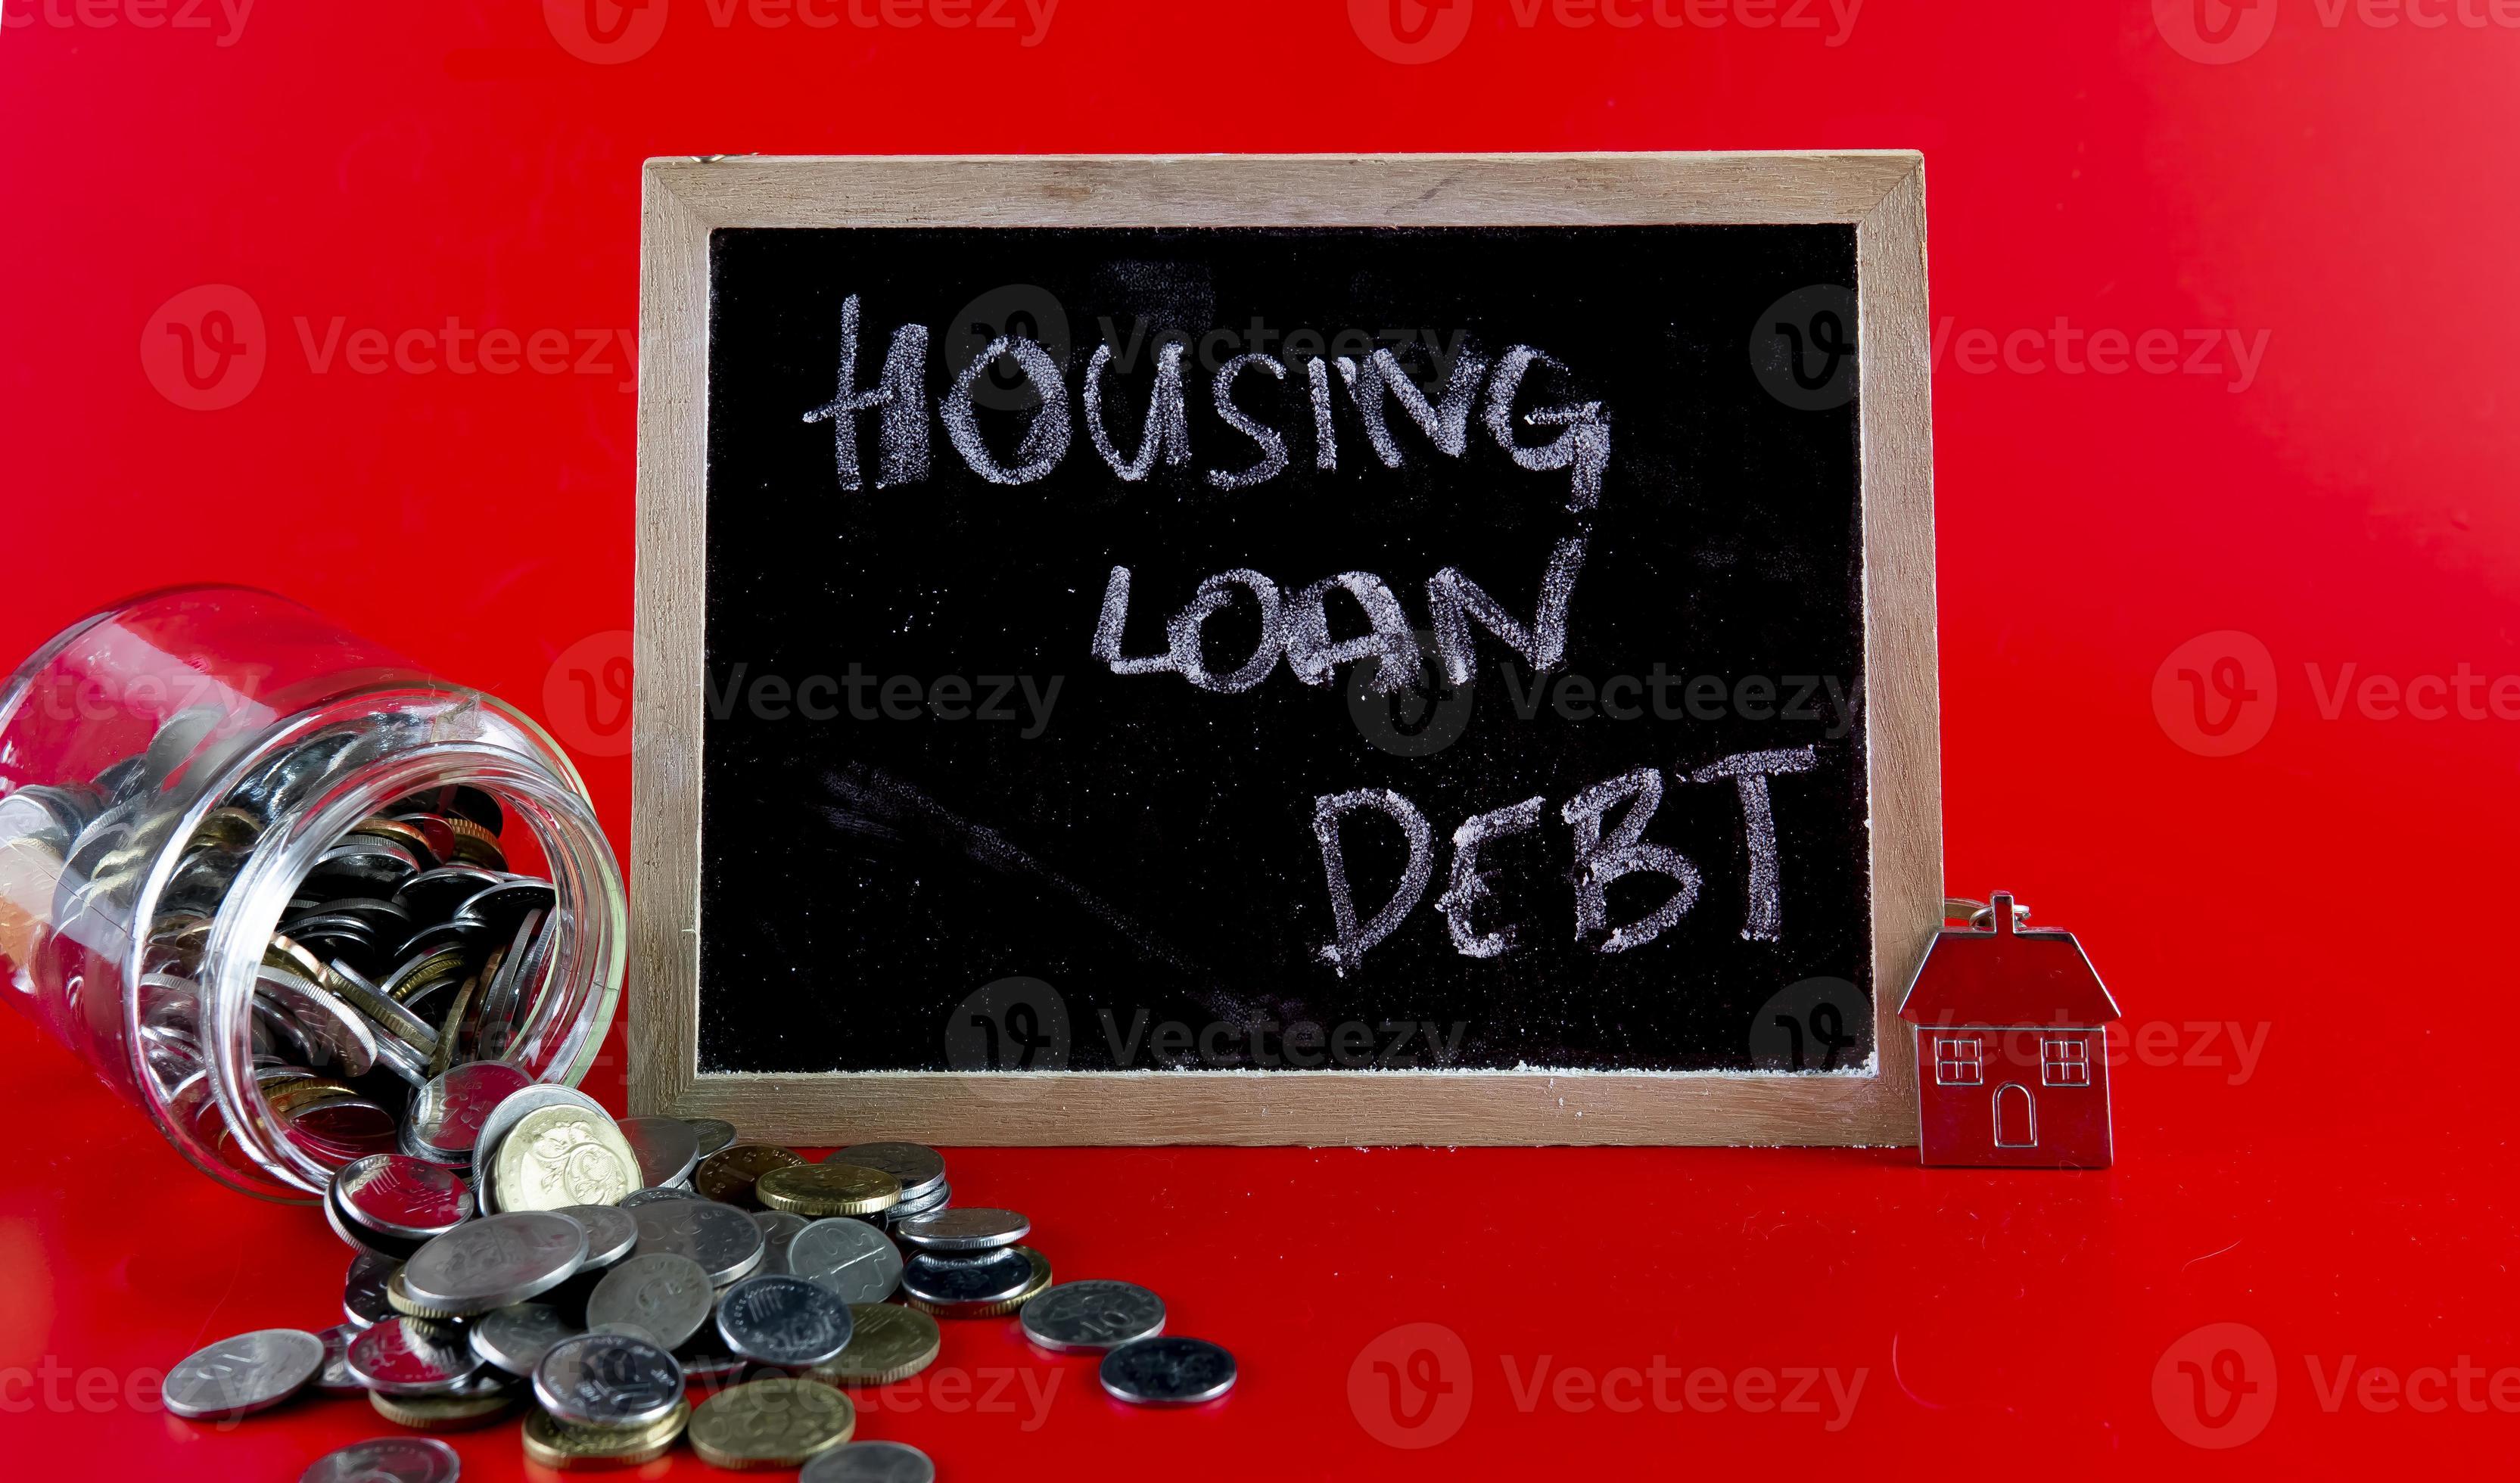 concetto di debito di prestito abitativo foto